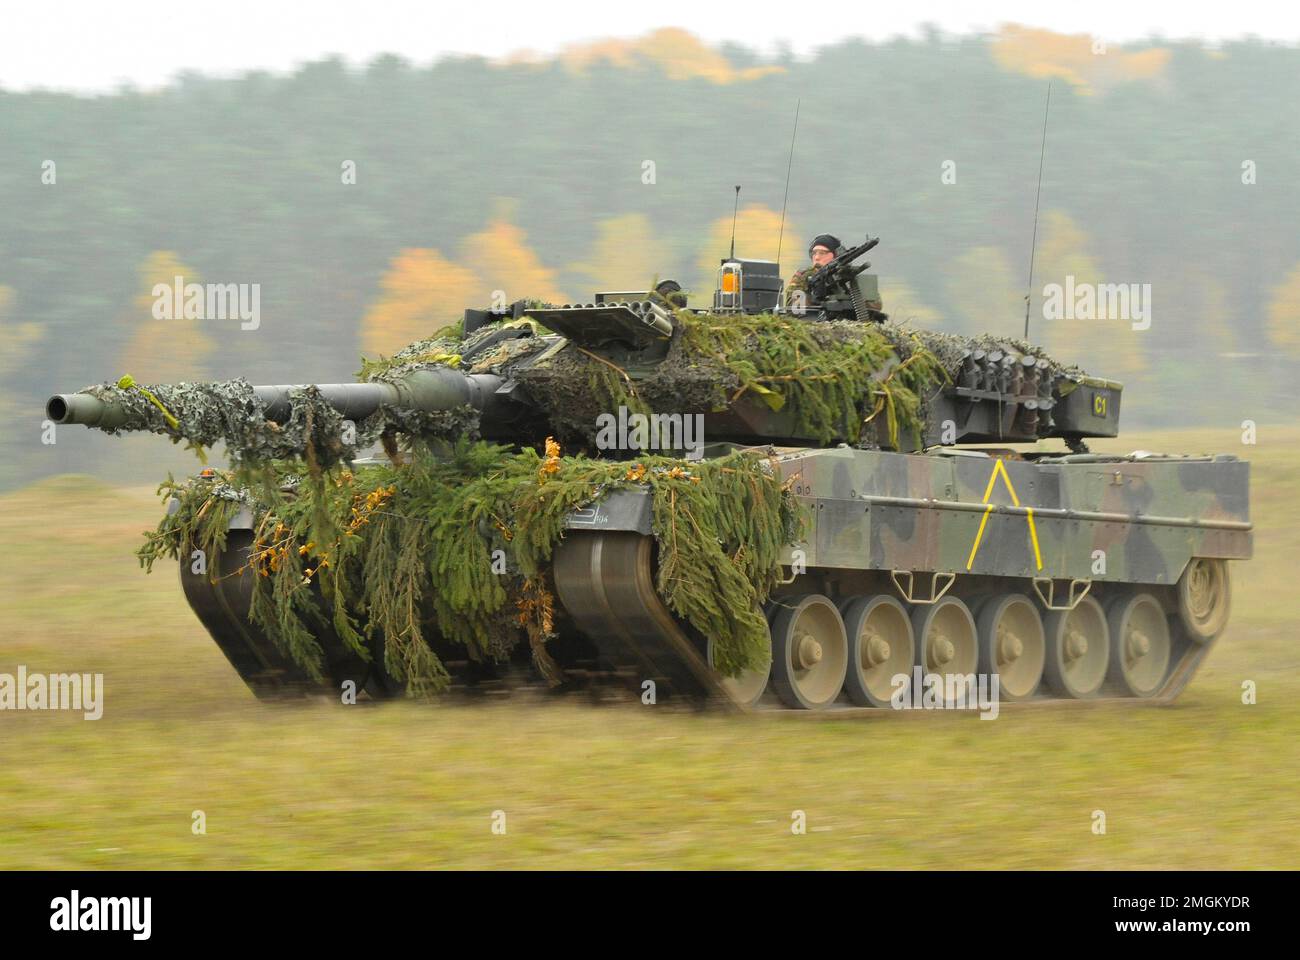 HOHENFELS, ALLEMAGNE - 25 octobre 2012 - Un char de combat principal de l'armée allemande Leopard II, affecté au 104th Panzer Bataillon, traverse le joint Multinat Banque D'Images